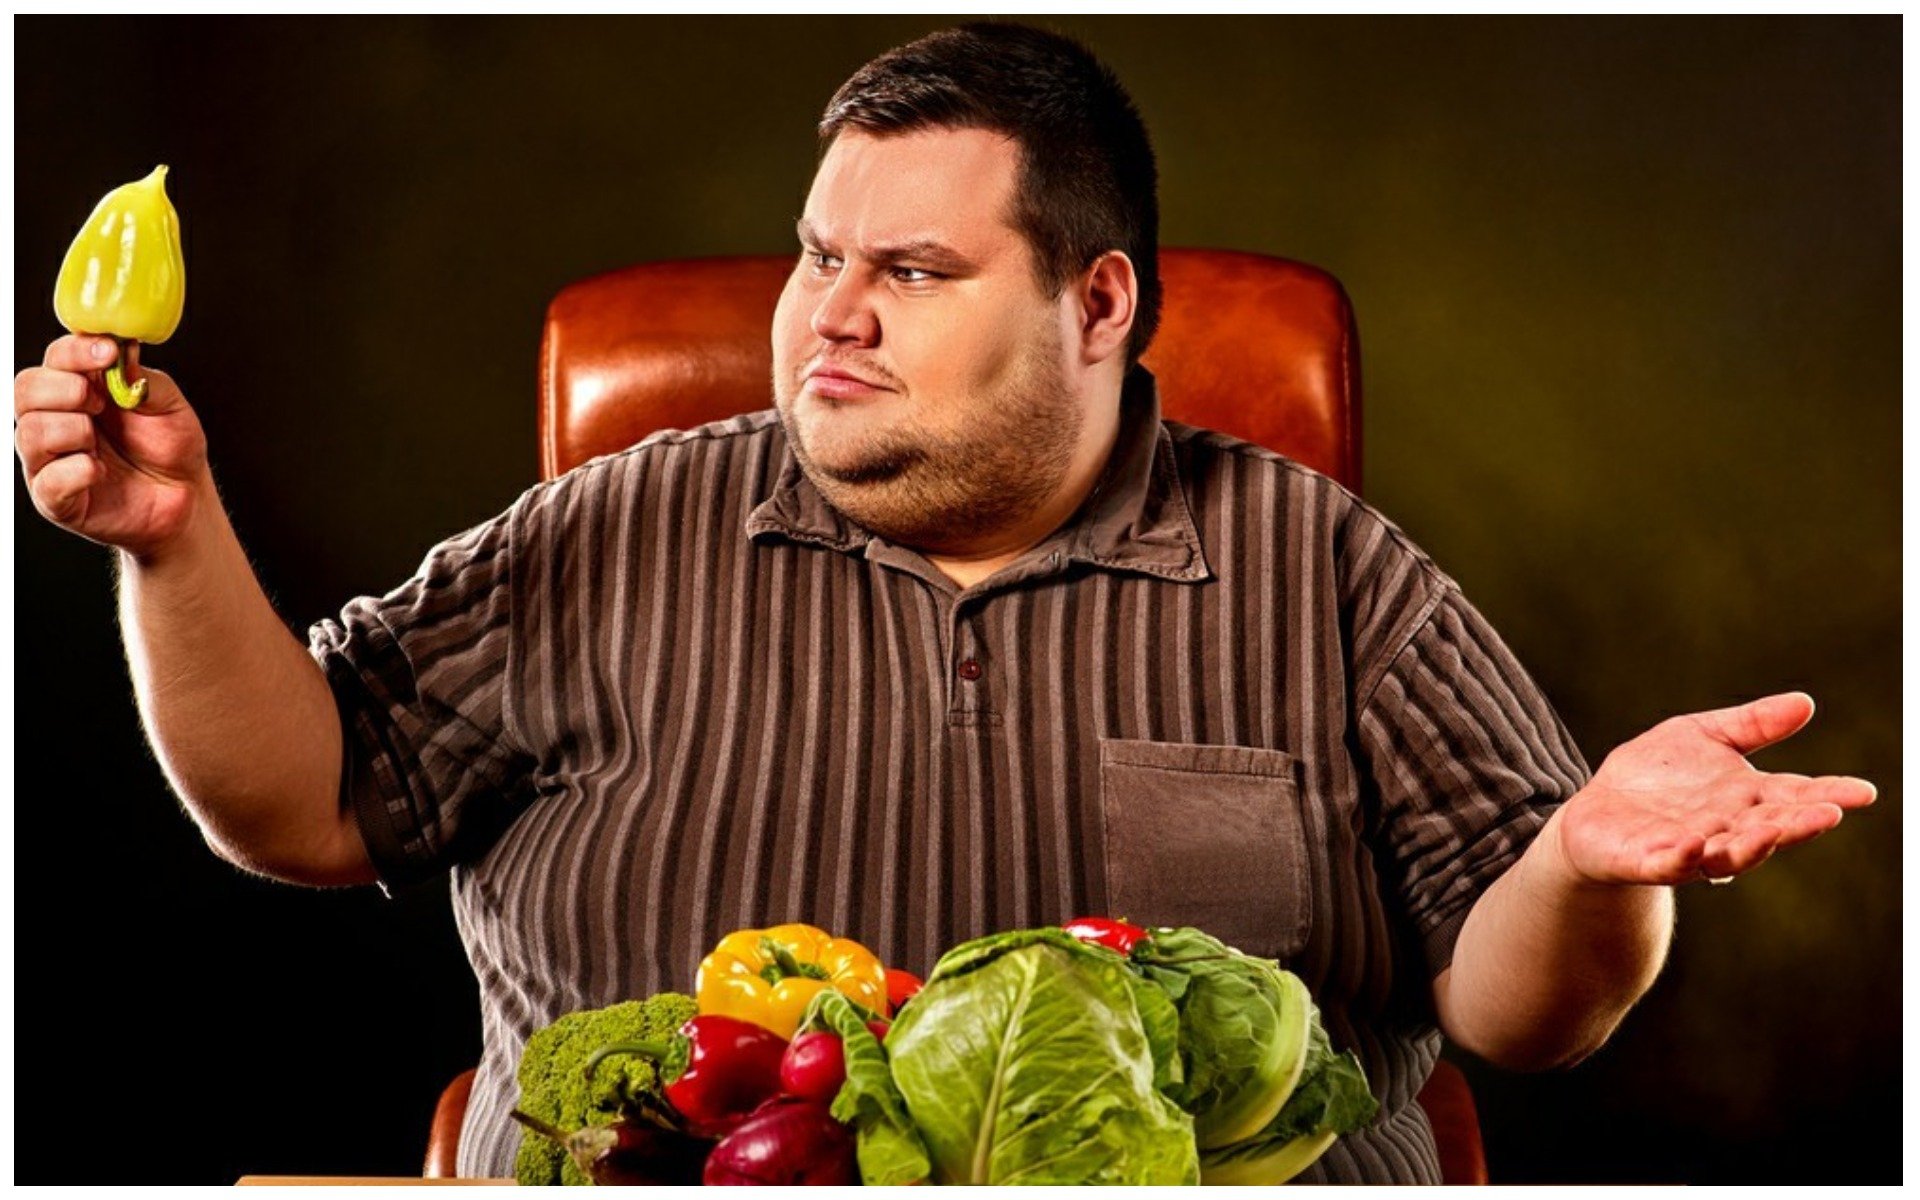 Ешь и толстым становишься. Толстый человек с едой. Жирный парень с едой. Толстый мужик с едой.